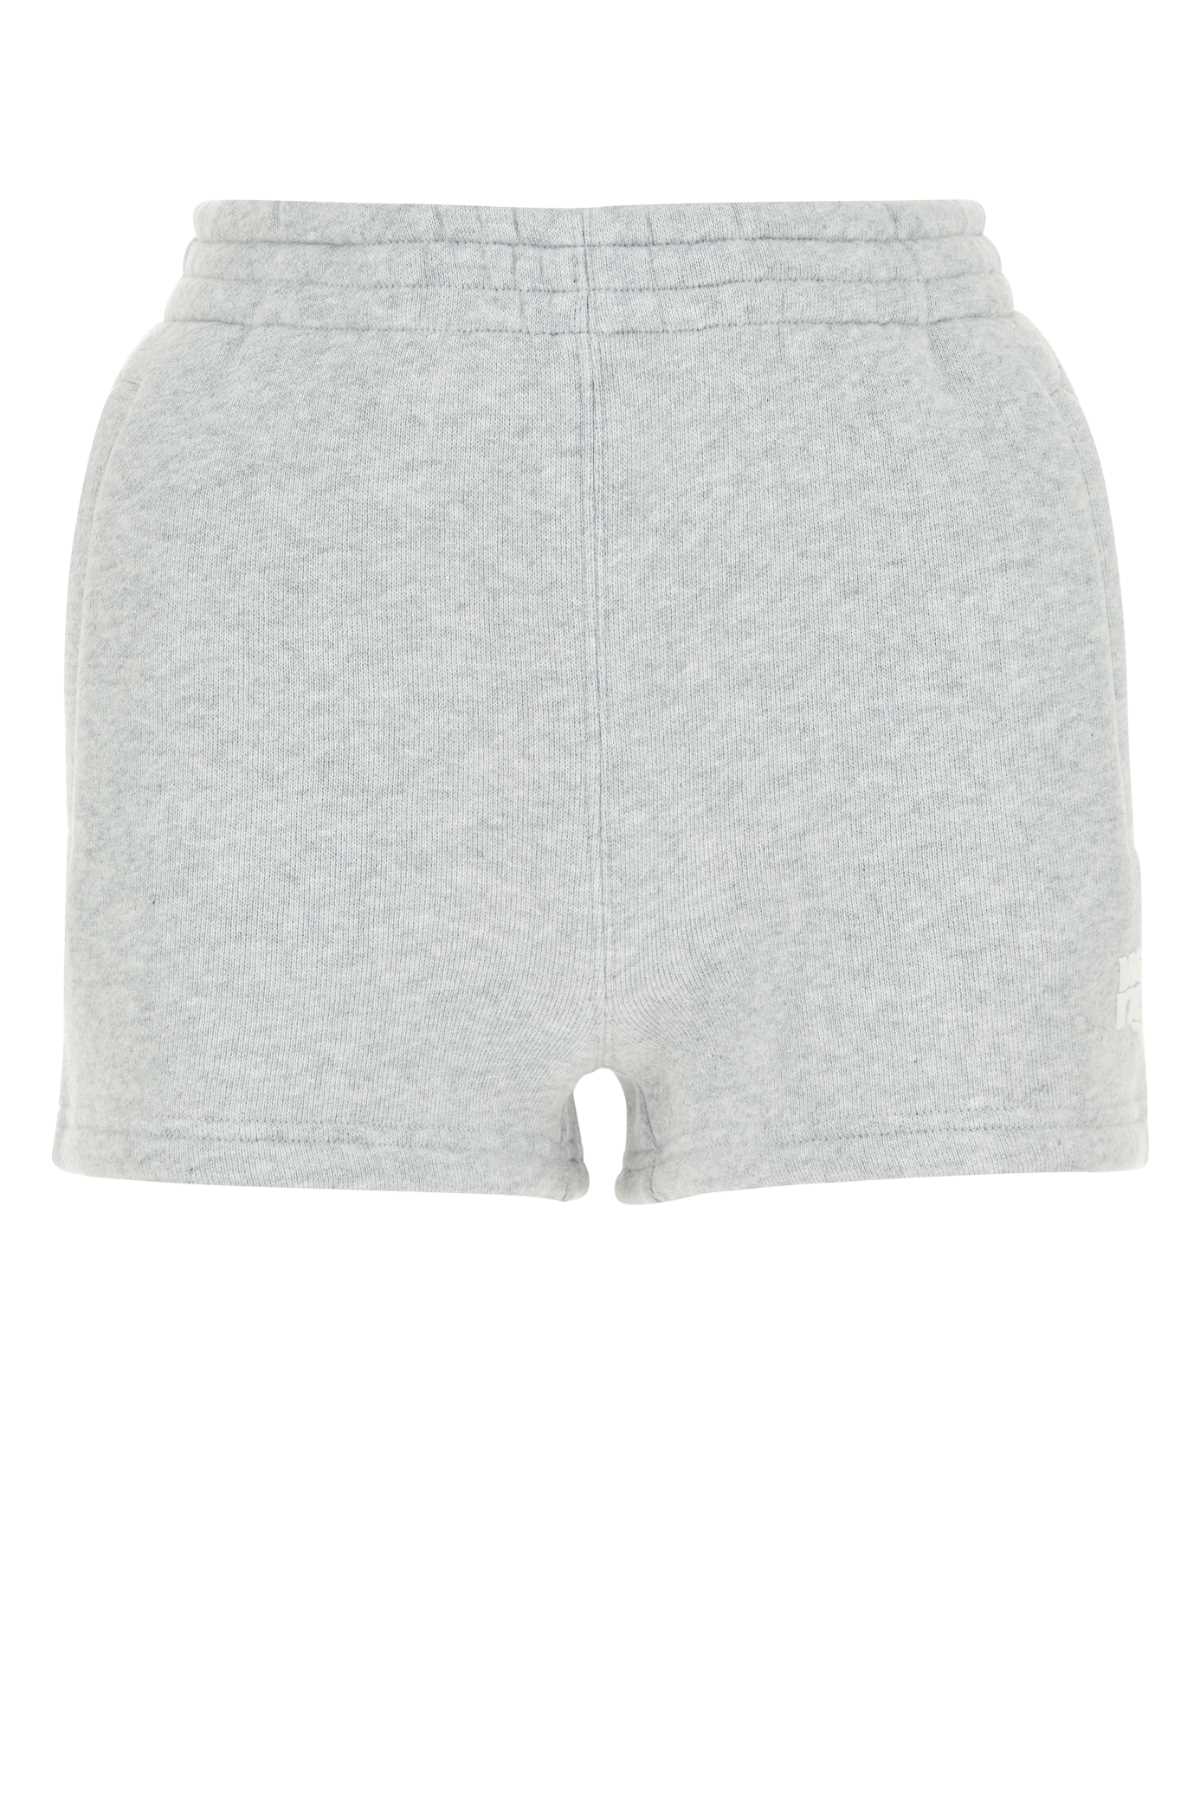 Melange Grey Cotton Blend Shorts